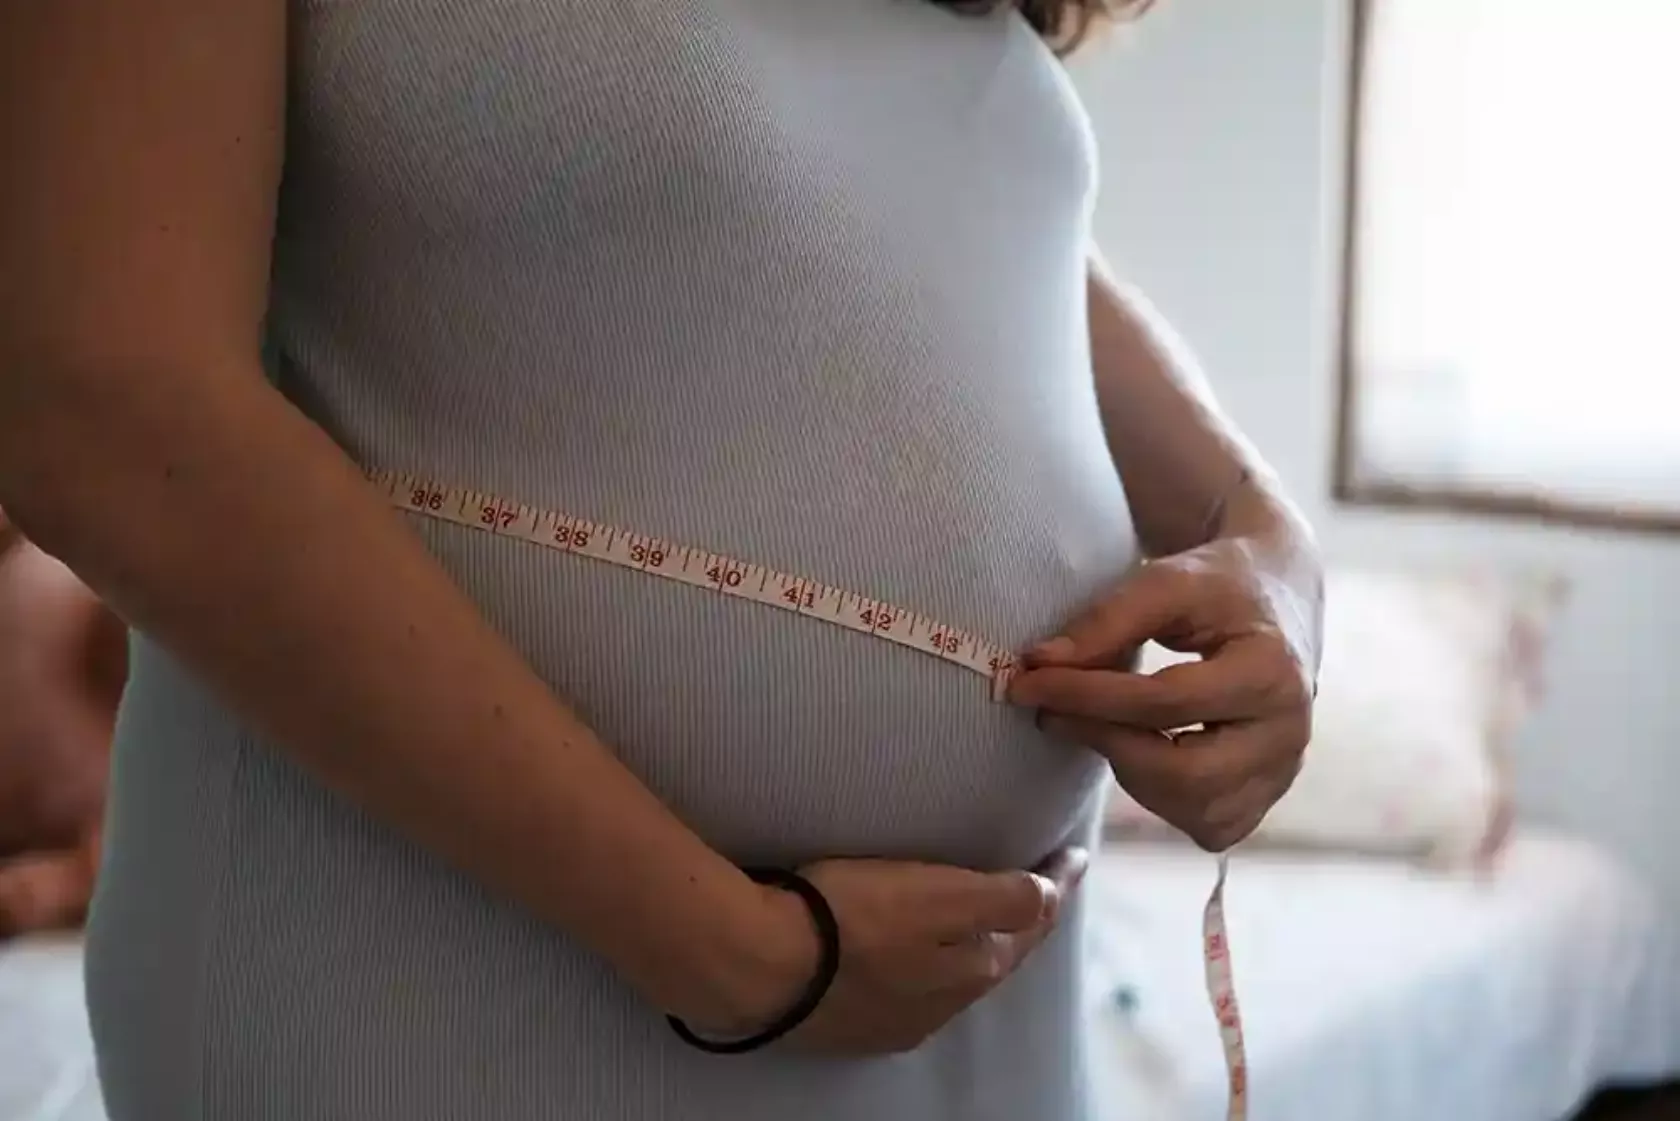 Unkenntliche Schwangere misst ihren Bauchumfang.